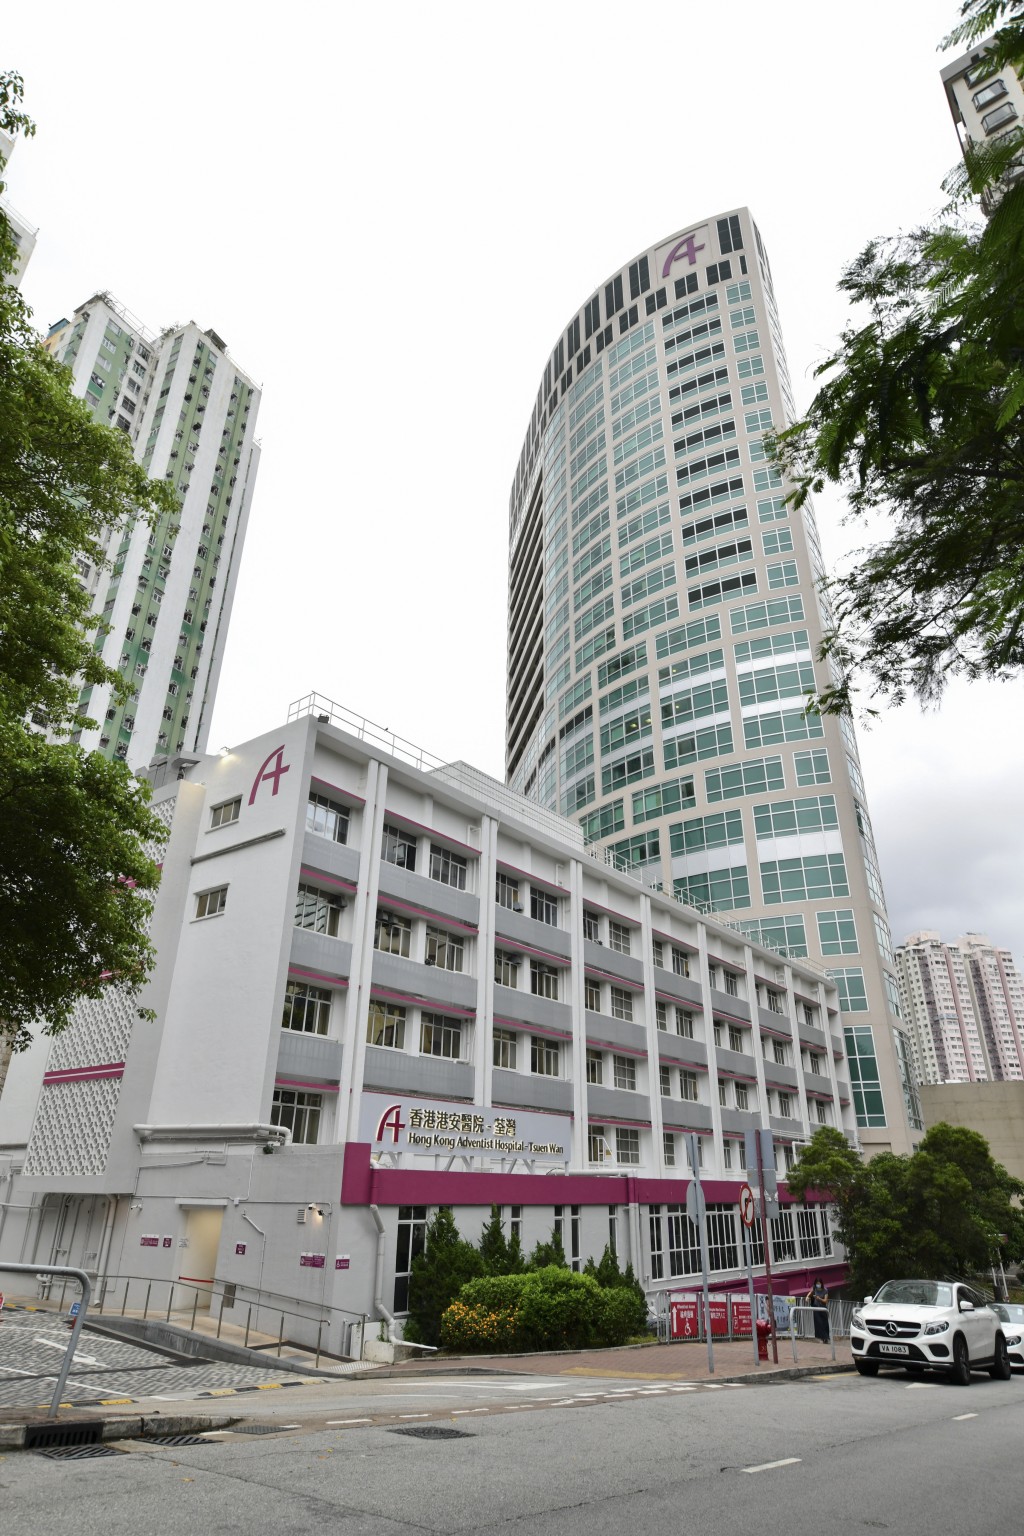 荃湾港安医院表示，该名孕妇病人在生产后状况曾稳定且清醒。资料图片